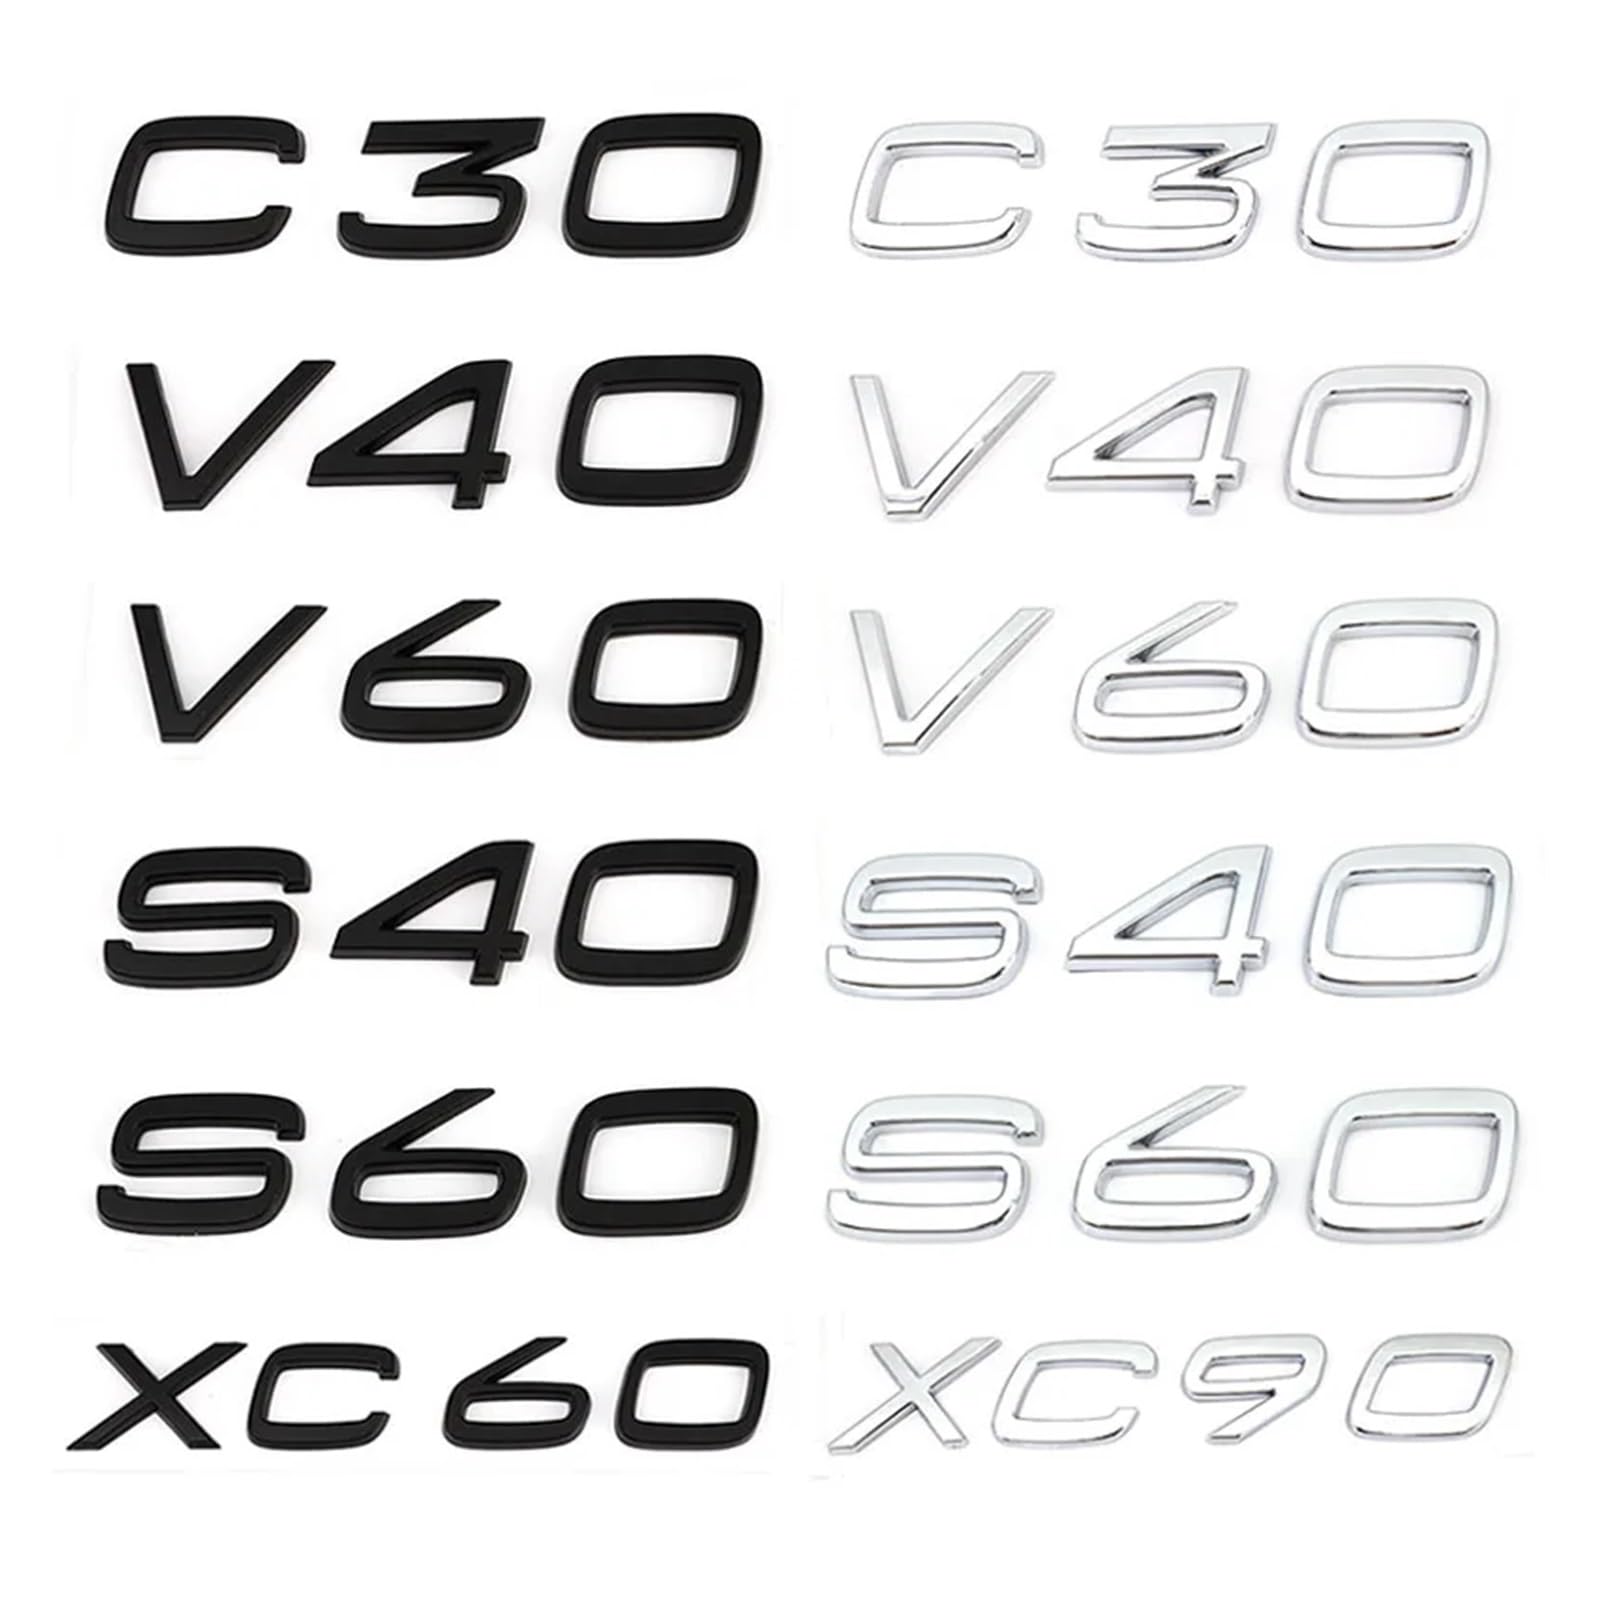 YSRWTBBA 3D AWD T3 T5 T6 T8 Logo-Emblem-Abzeichen Aufkleber Autoaufkleber Kompatibel mit C30 V40 V60 S40 S60 XC60 XC90 XC40 S80 S90 S80L S60L Auto-Styling, einfach abziehen und von YSRWTBBA